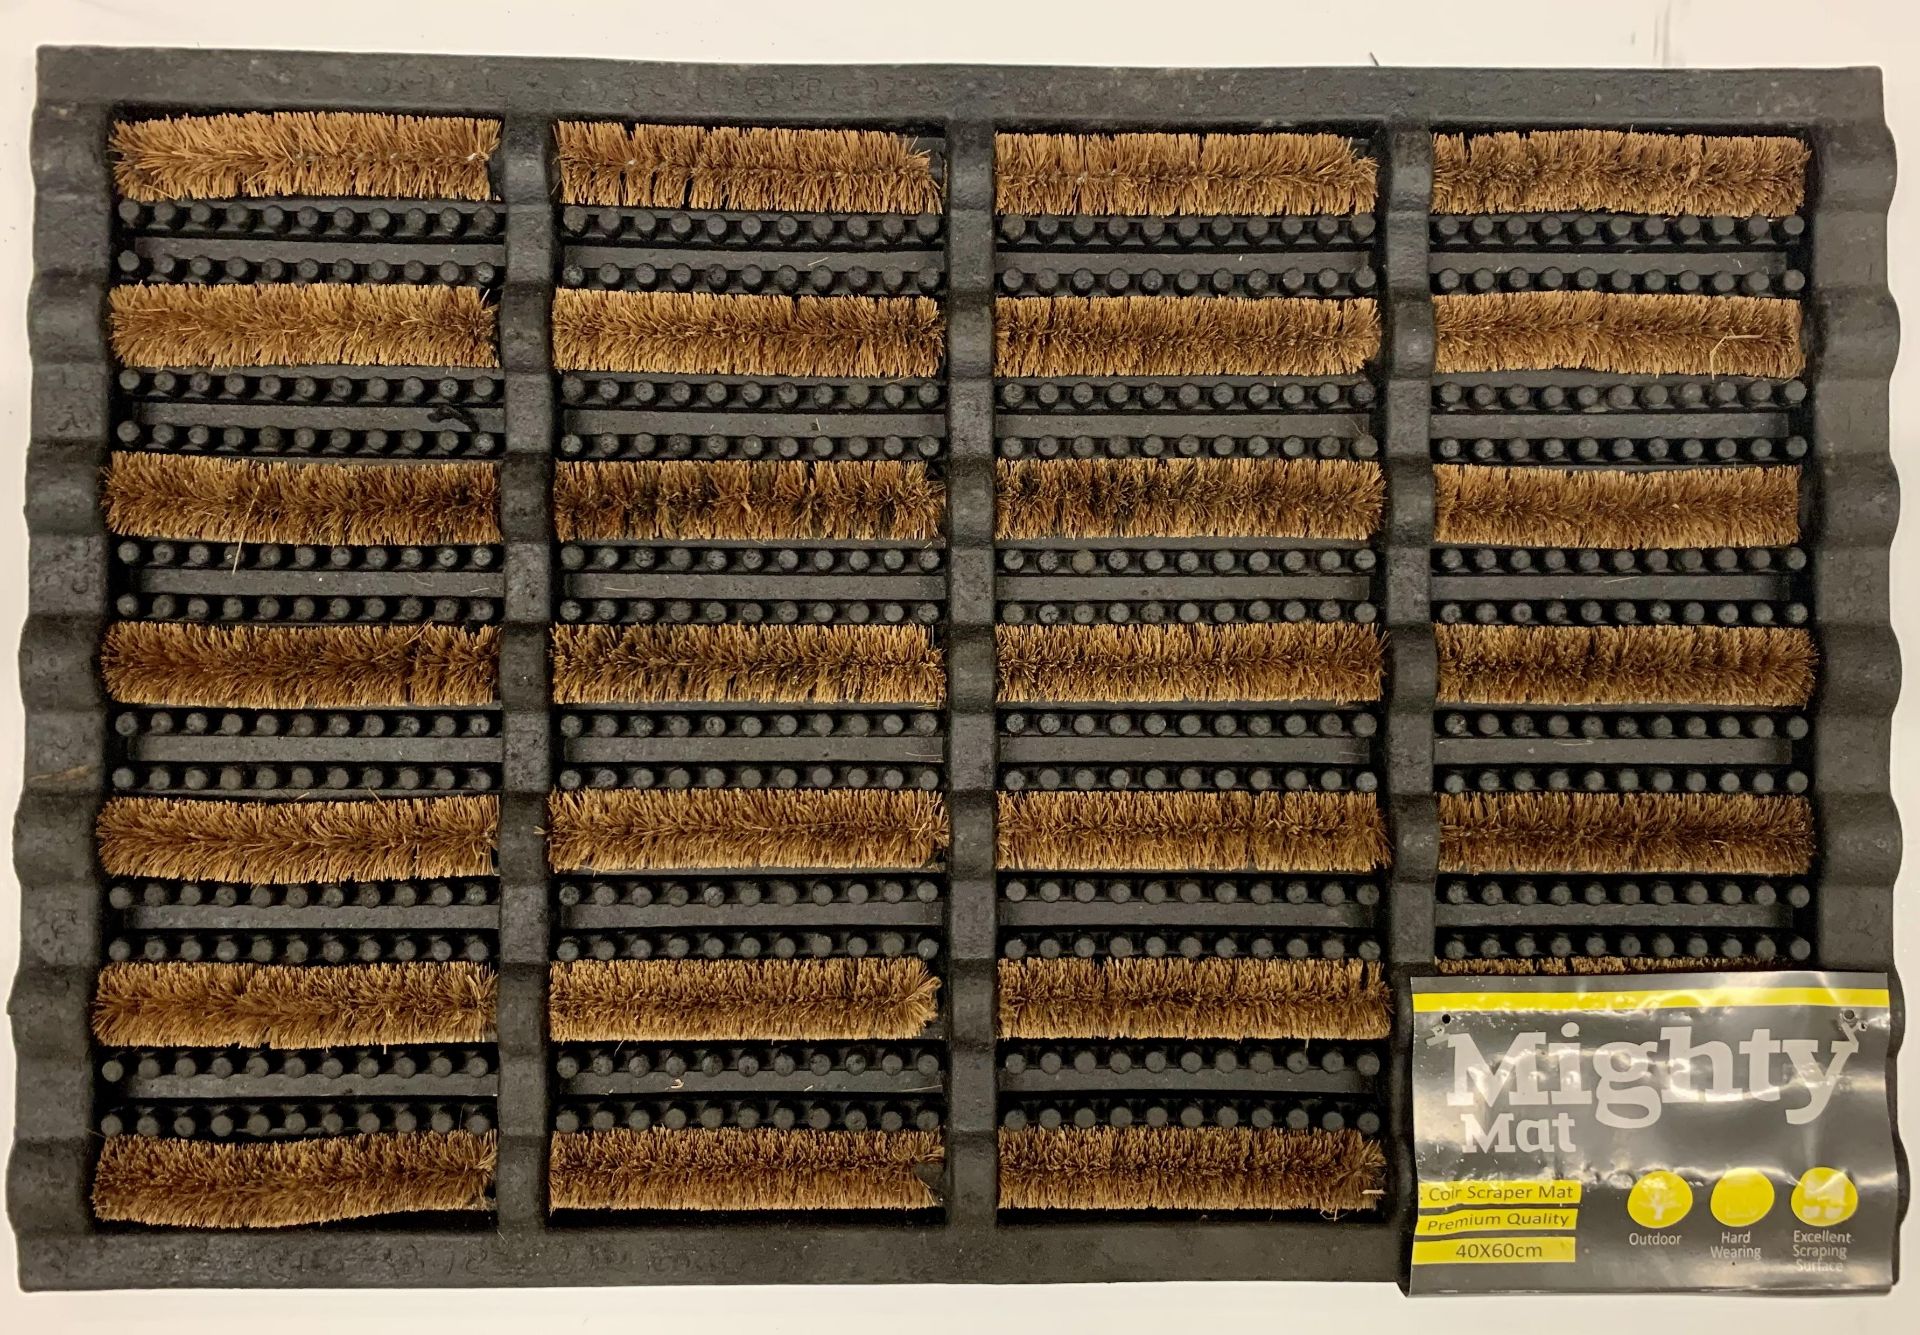 10 x Mighty Mat coir scraper mats - 40cm x 60cm